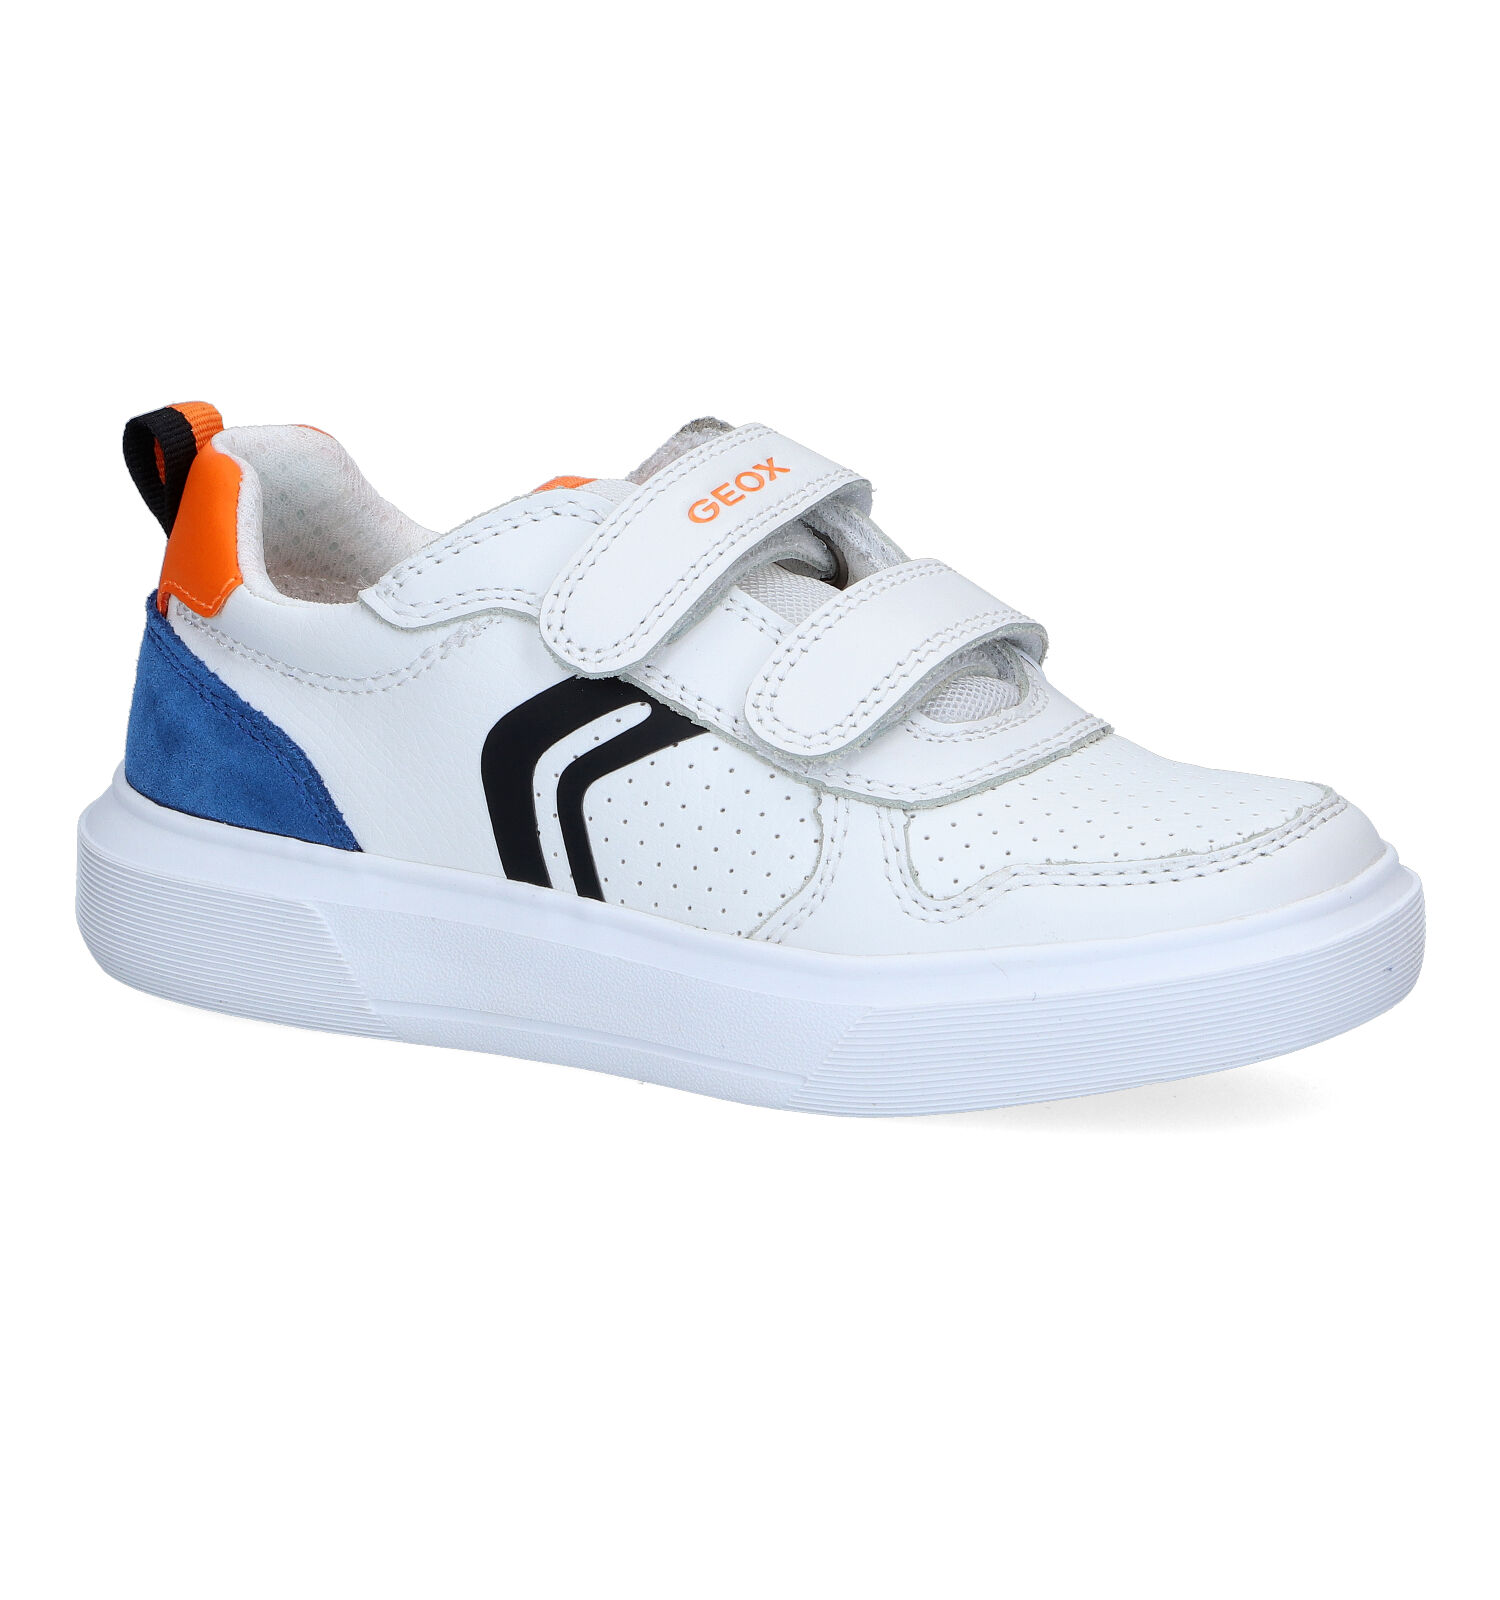 donker Omgekeerd Kinderdag Geox Nettuno Witte Sneakers | Jongens Lage schoenen